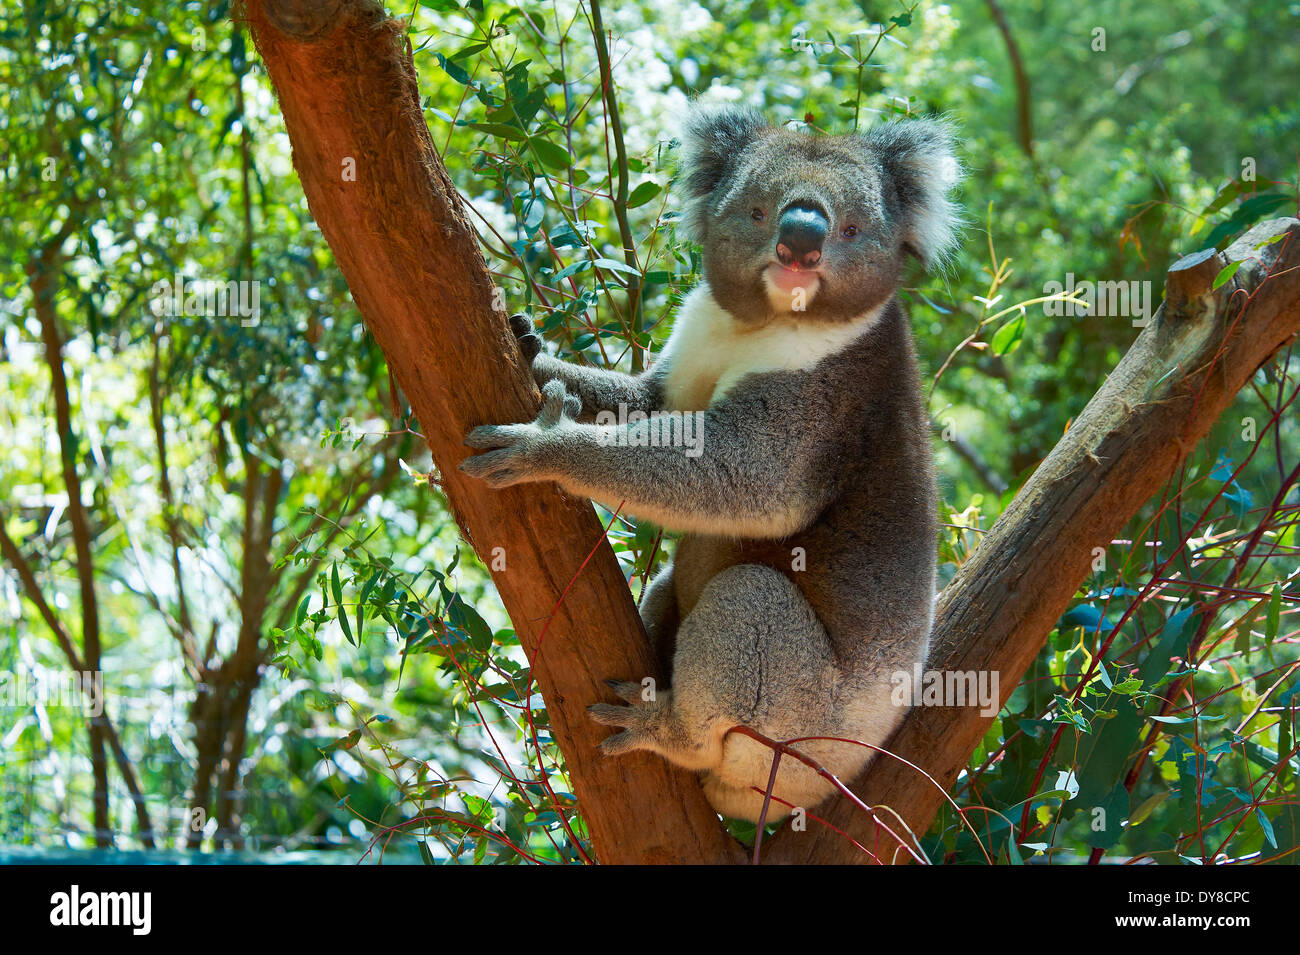 Australia, Healesville, koala, animal, Victoria, tree Stock Photo